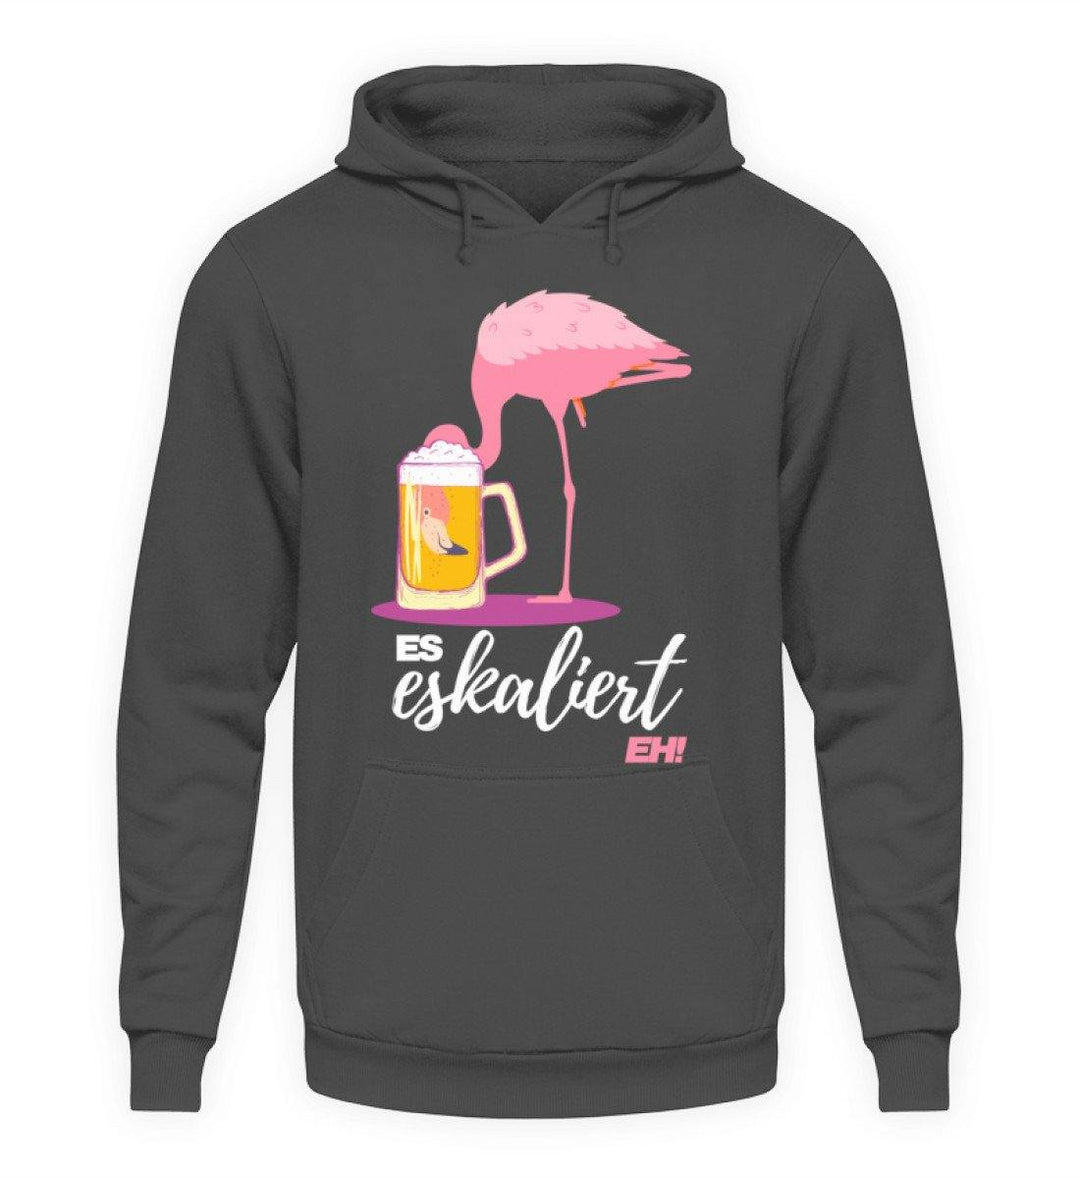 Es Eskaliert Eh - Flamingo  - Unisex Kapuzenpullover Hoodie - Words on Shirts Sag es mit dem Mittelfinger Shirts Hoodies Sweatshirt Taschen Gymsack Spruch Sprüche Statement